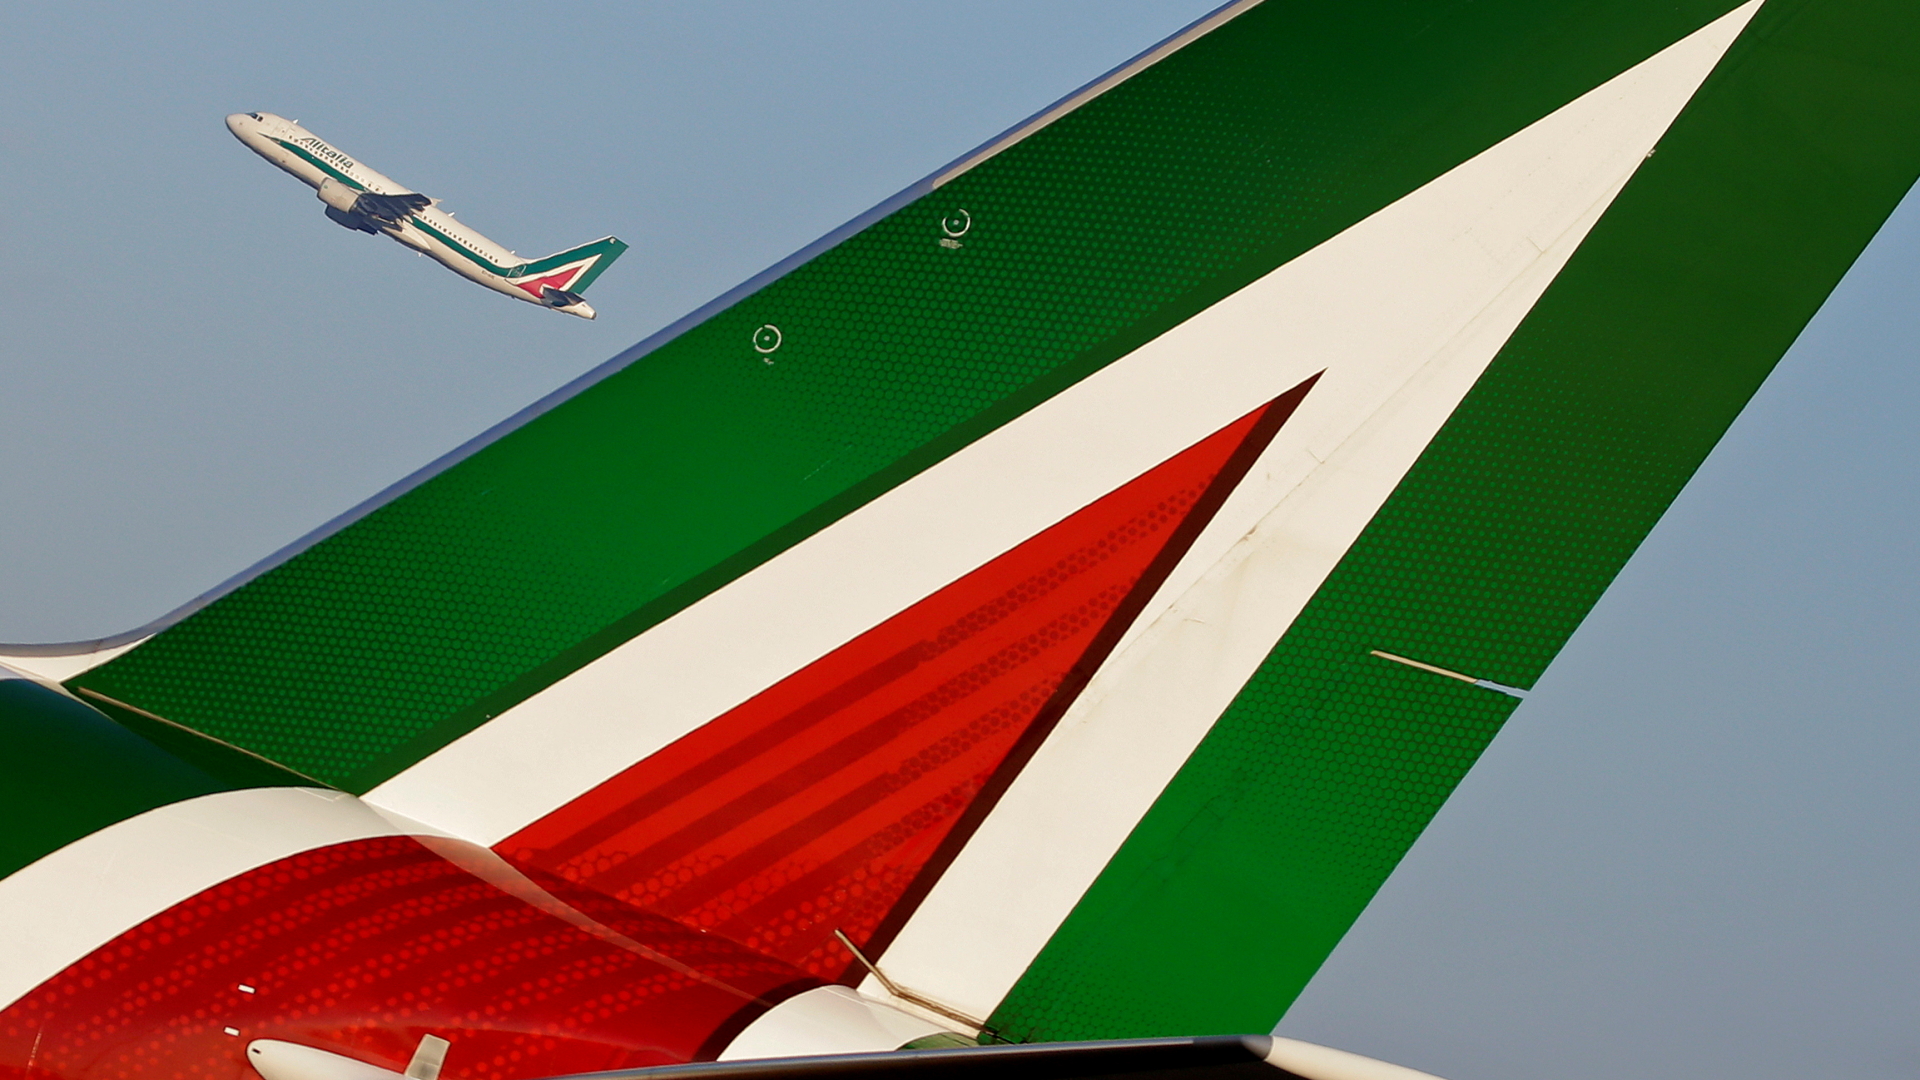 Maschinen der italienischen Fluggesellschaft Alitalia | REUTERS